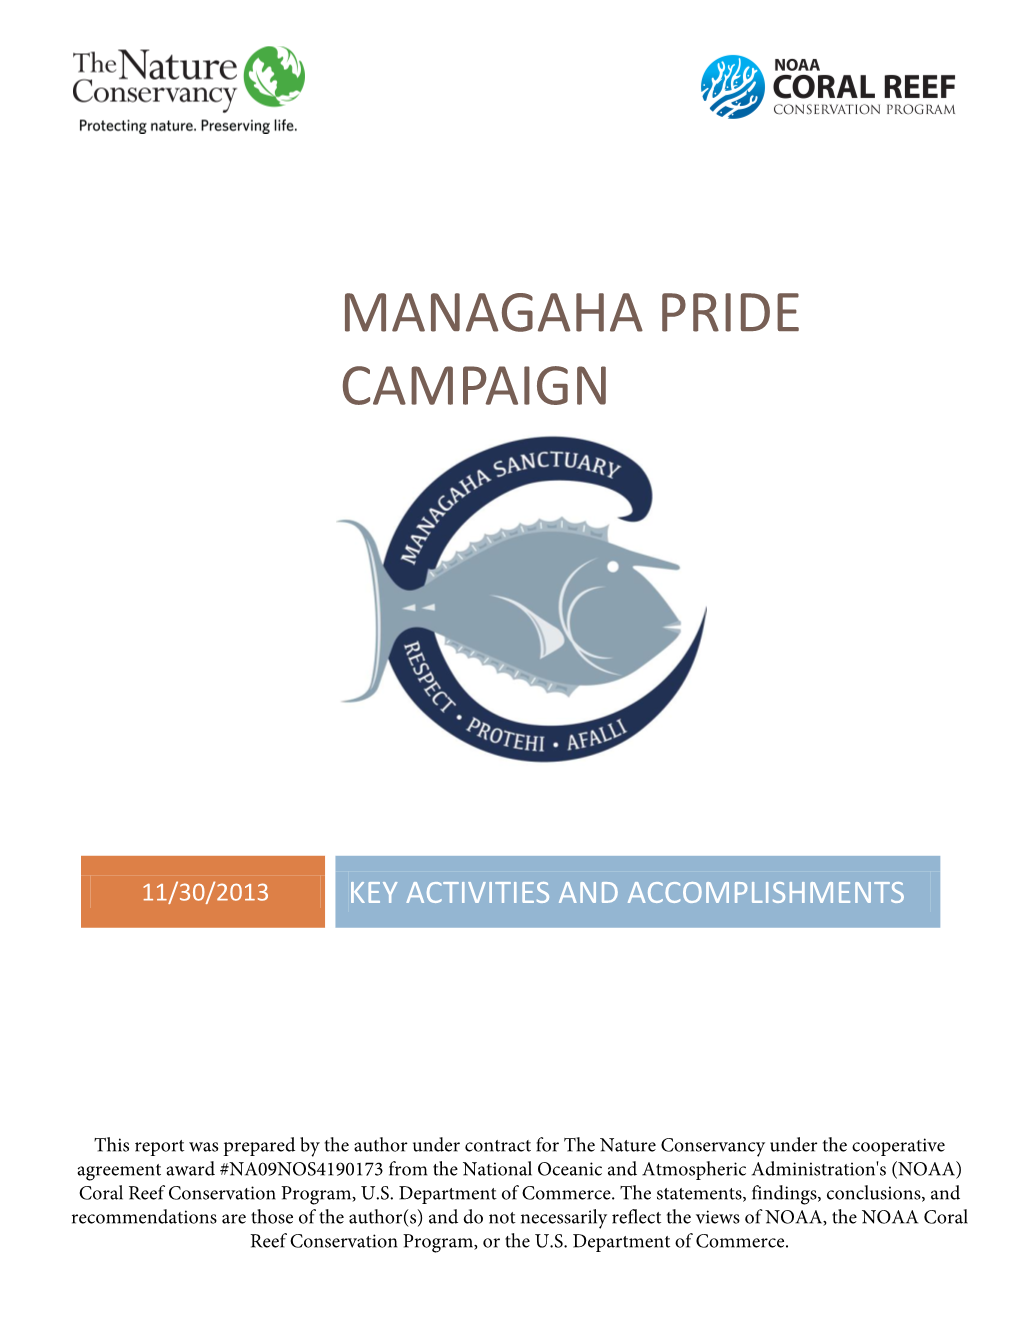 Managaha Pride Campaign